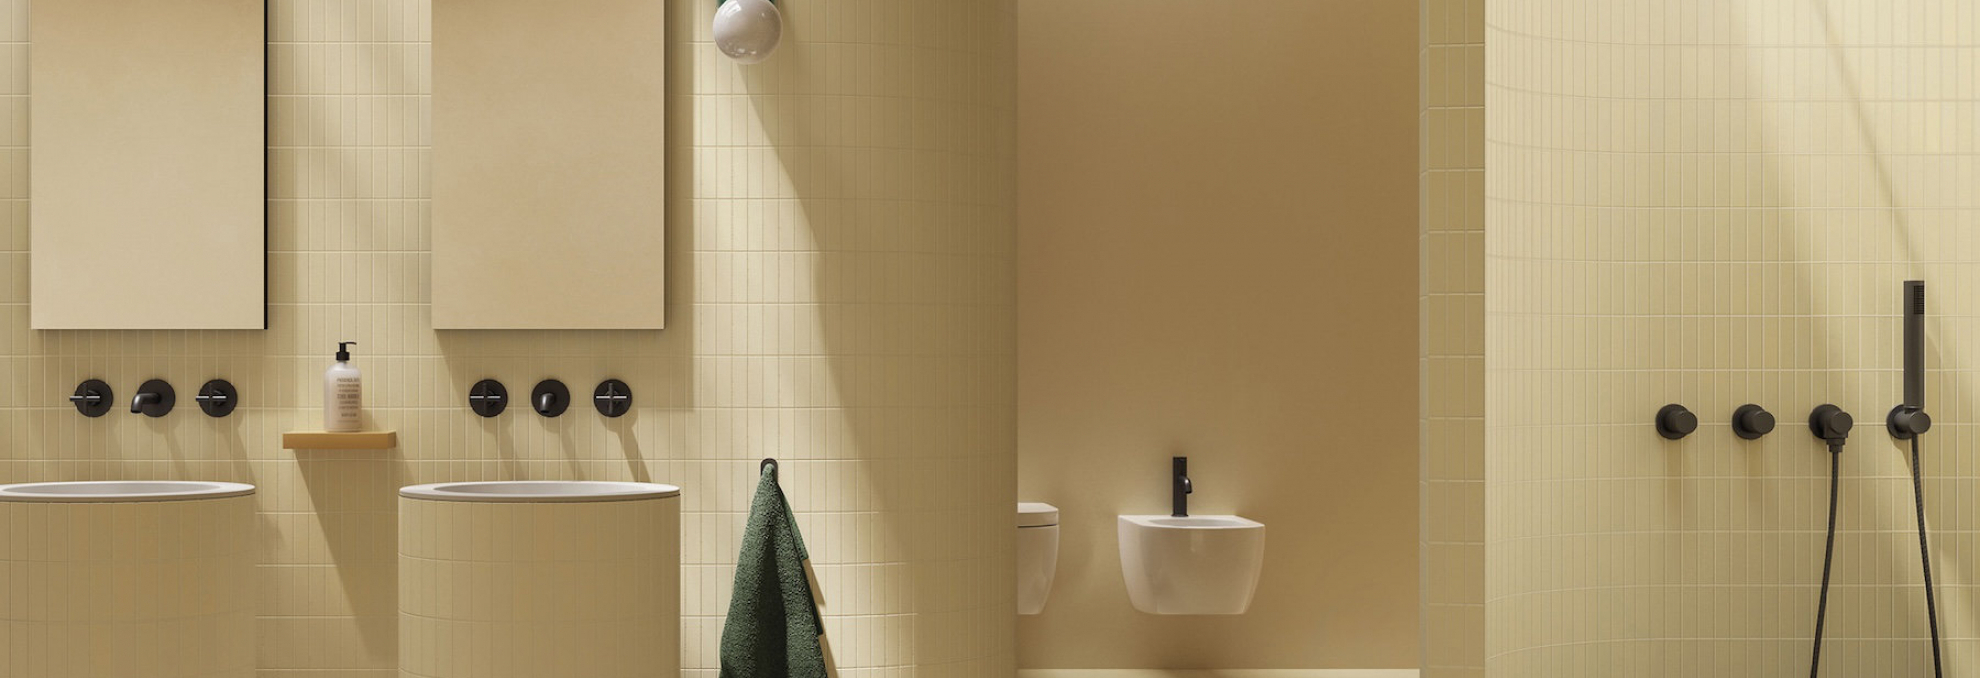 Koupelny ze série Nuances od Italgraniti ve veselých barvách